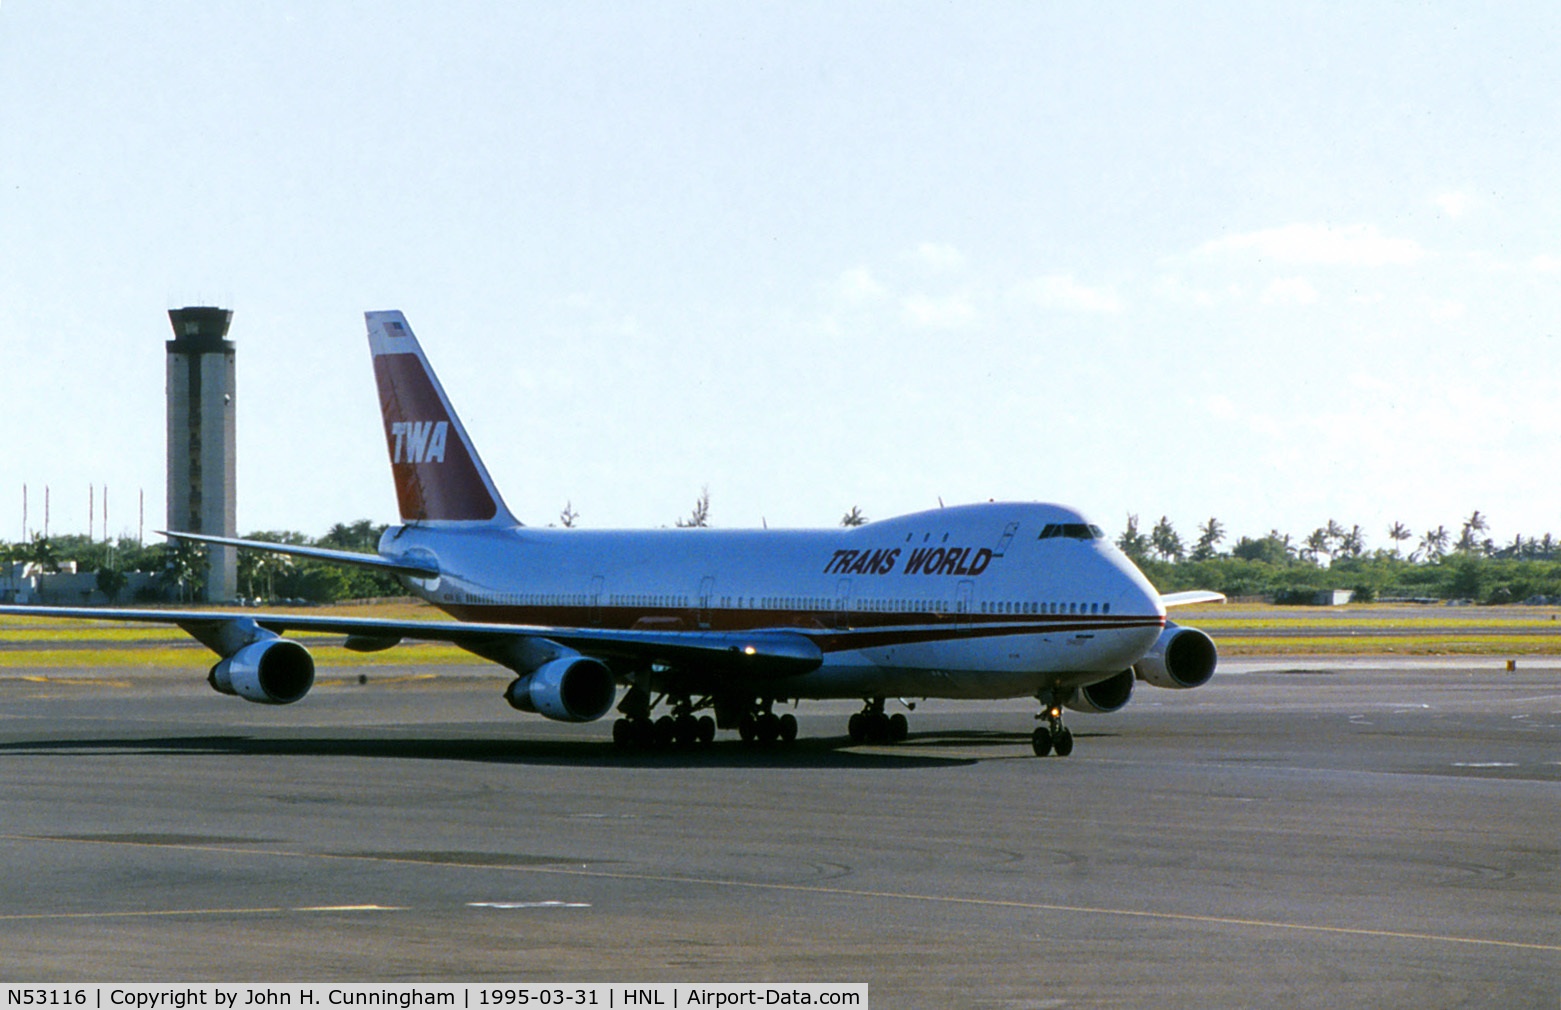 N53116, 1970 Boeing 747-131 C/N 20321, TWA 17116, or N53116 - a 747-131, built 1971 delisted 1989, seen here in Honolulu in March 1995